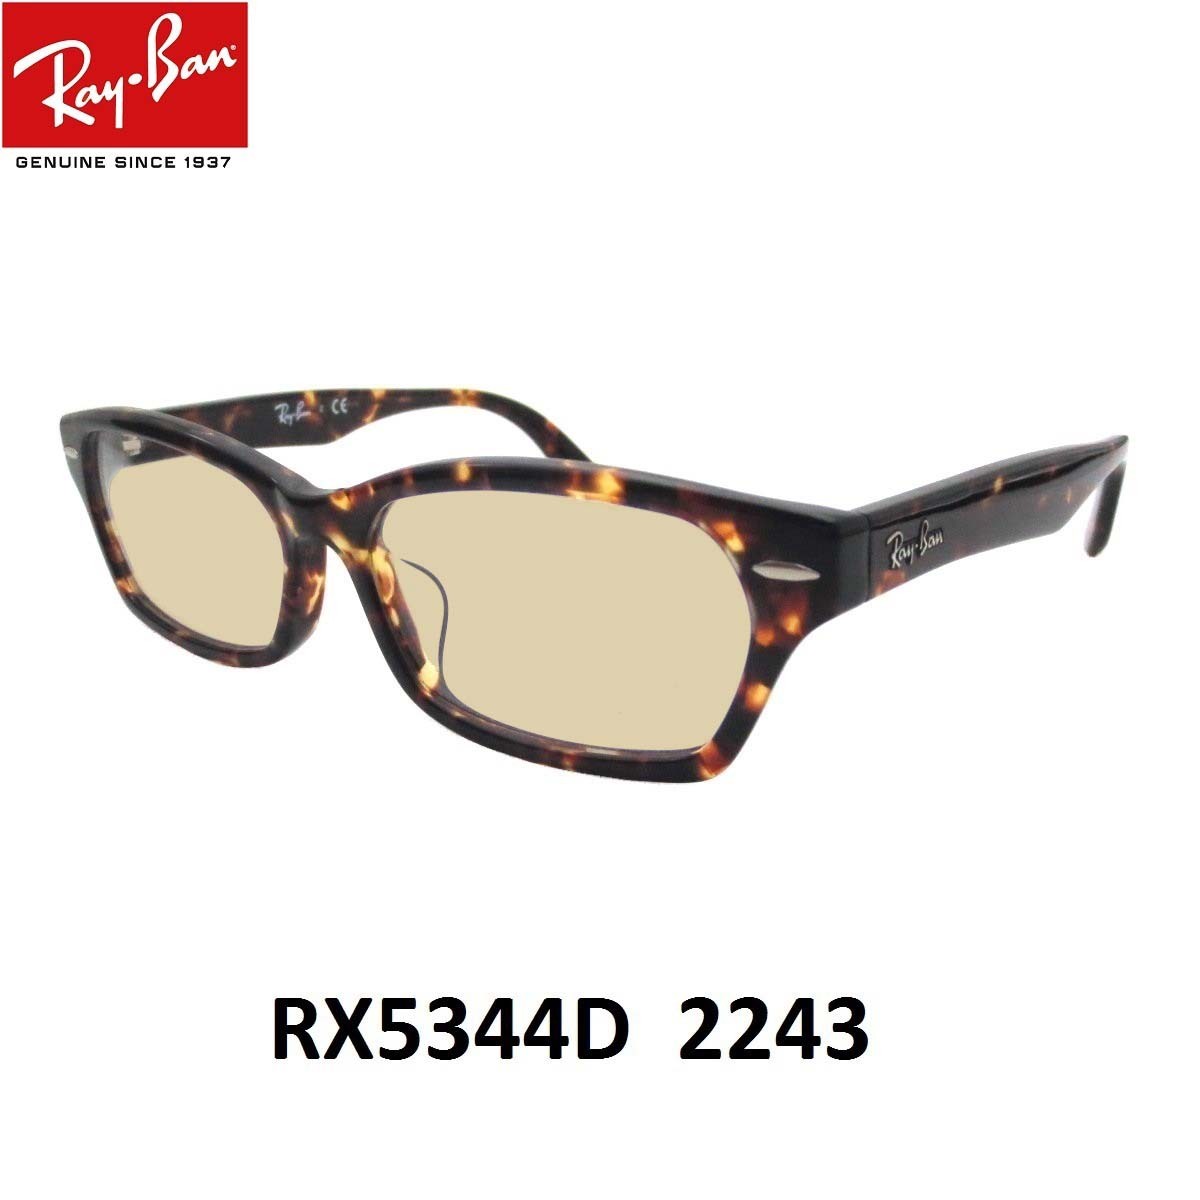 レイバン ライトカラー サングラス Ray-Ban RX5344D-2243 サイズ55ミリ アジア...